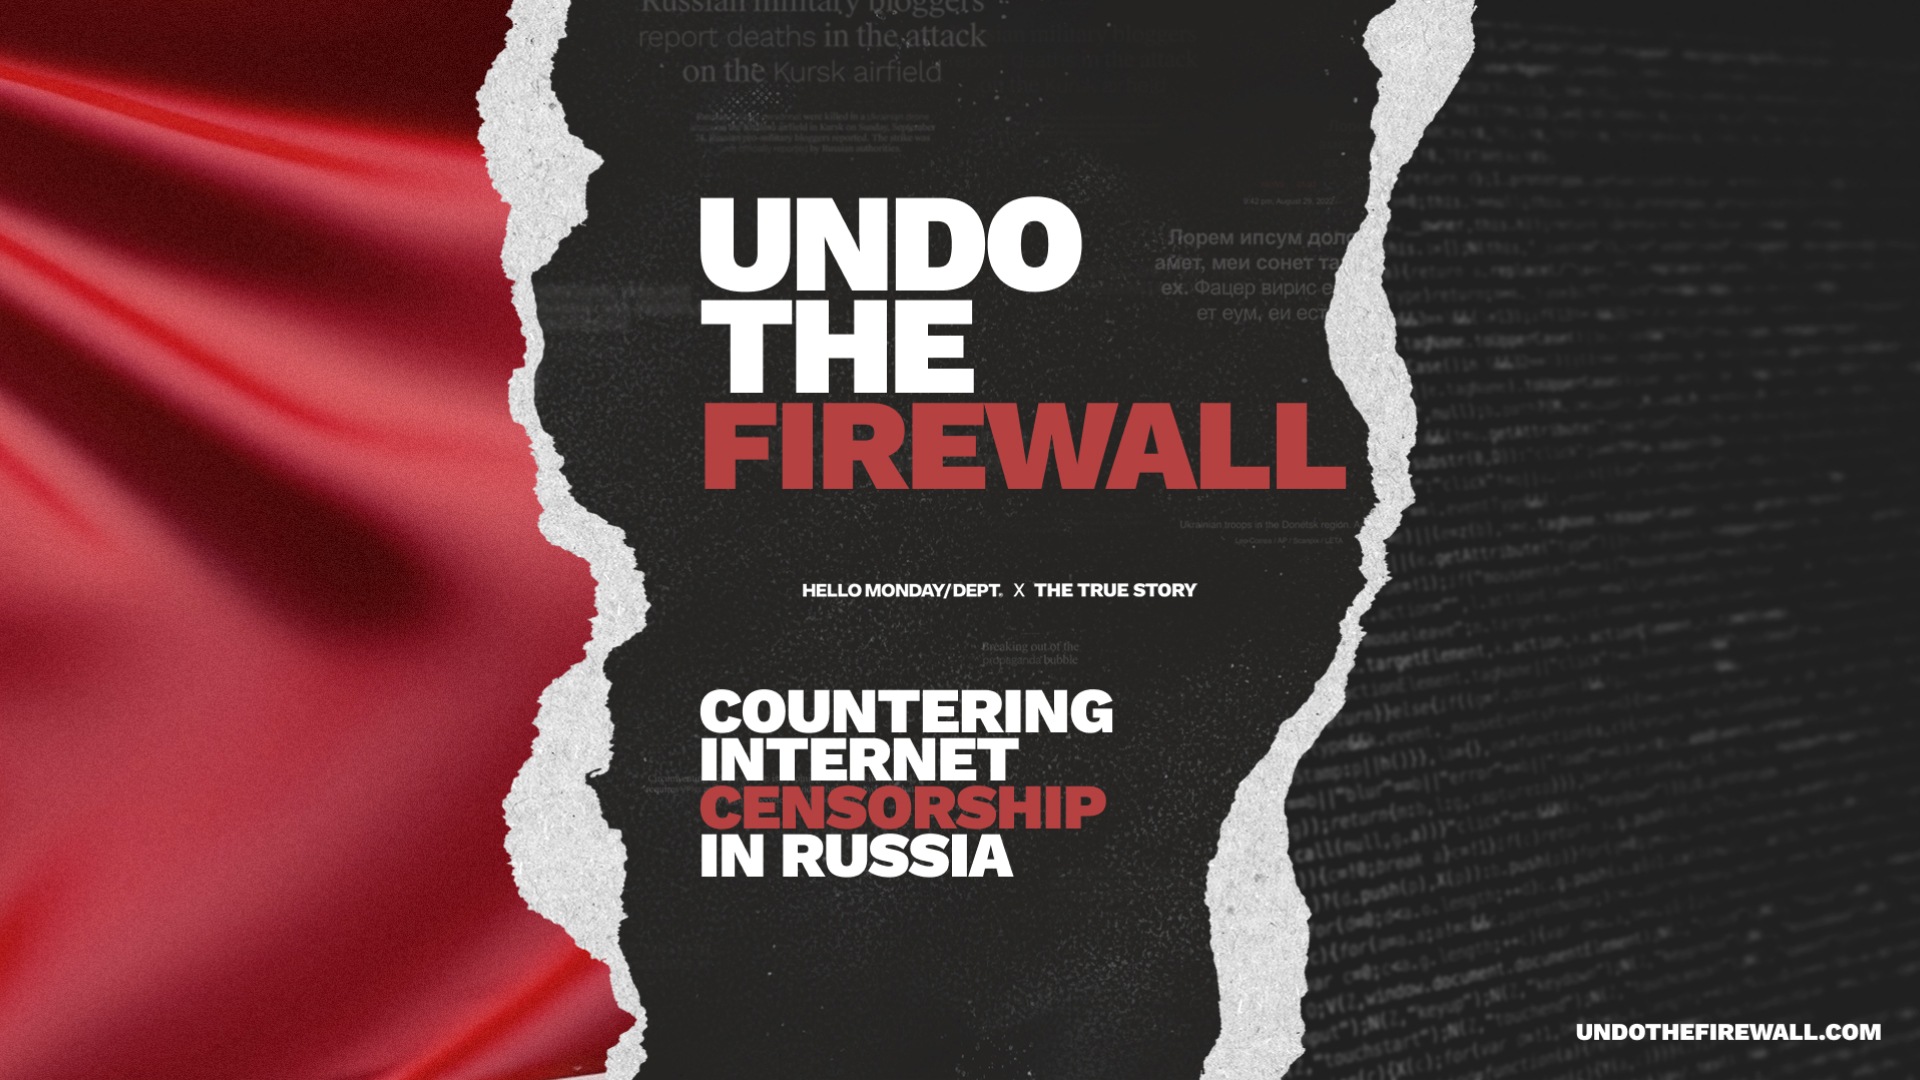 Undo the Firewall Initiative: Gegen die Internetzensur